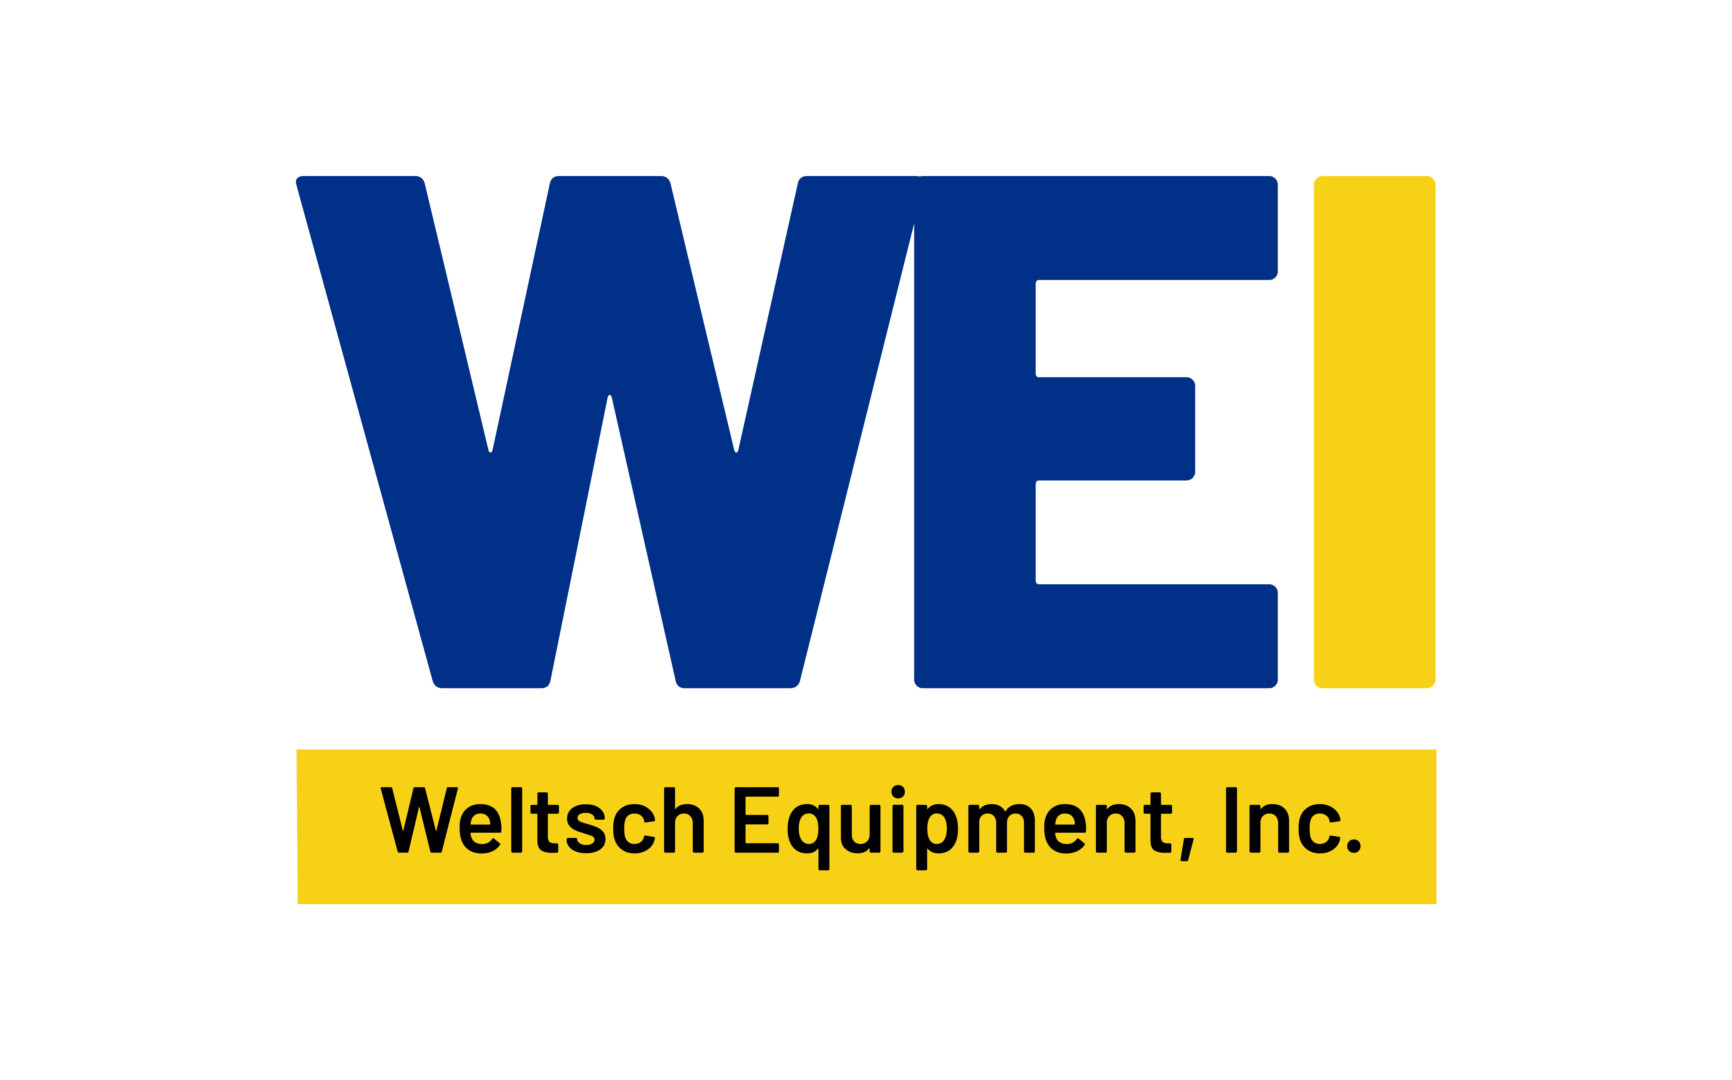 Weltsch Equipment, Inc